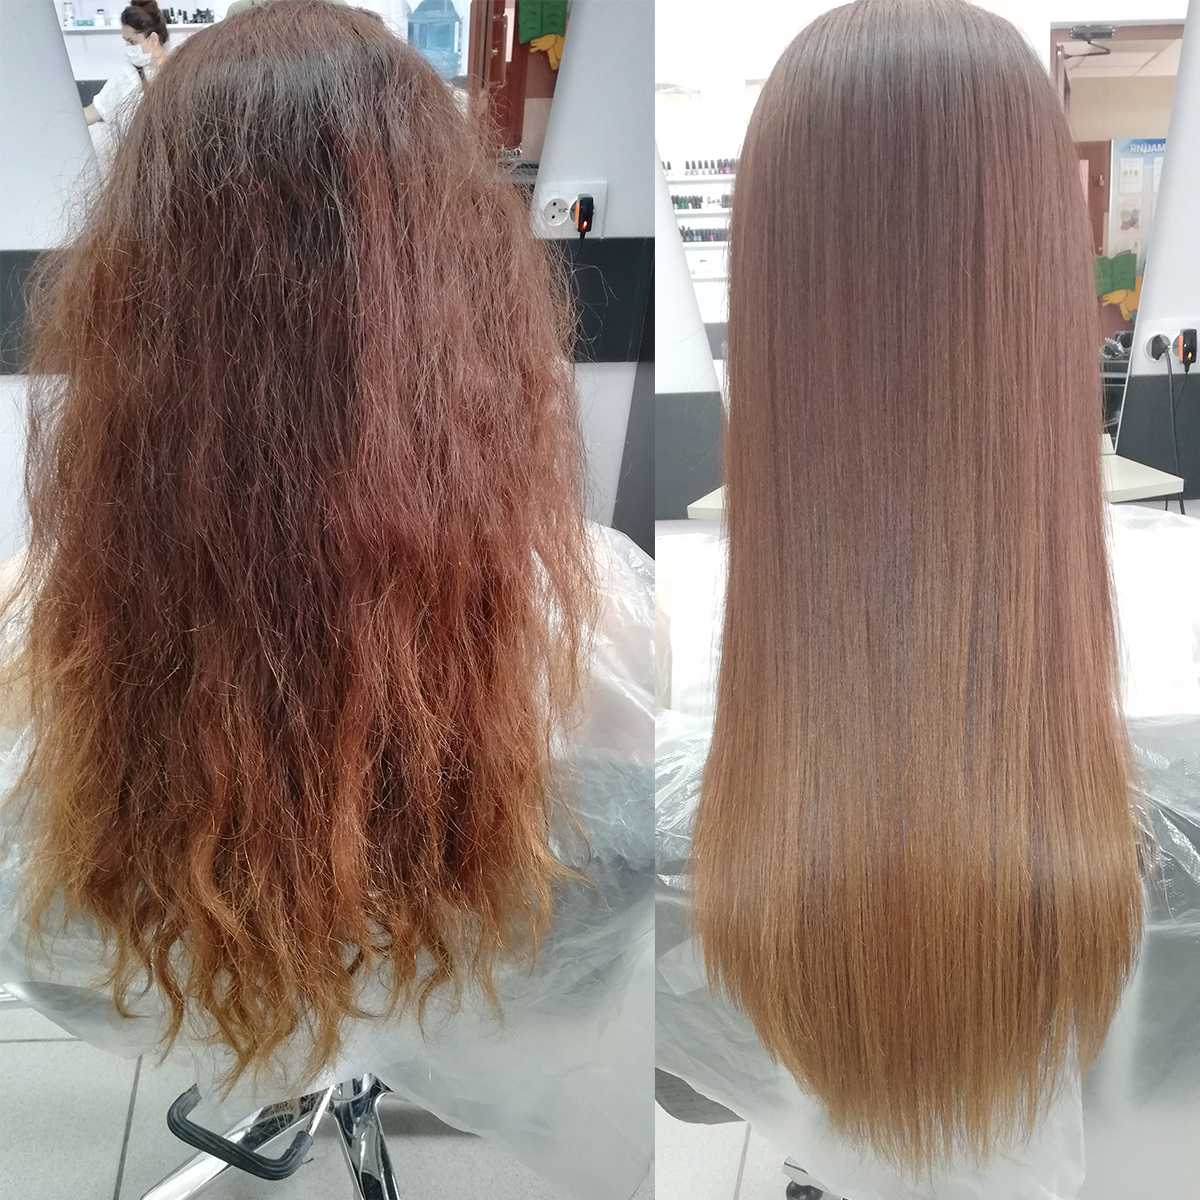 Японское ламинирование волос Lebel или фитоламинирование: плюсы и минусы, фото до и после, отзывы